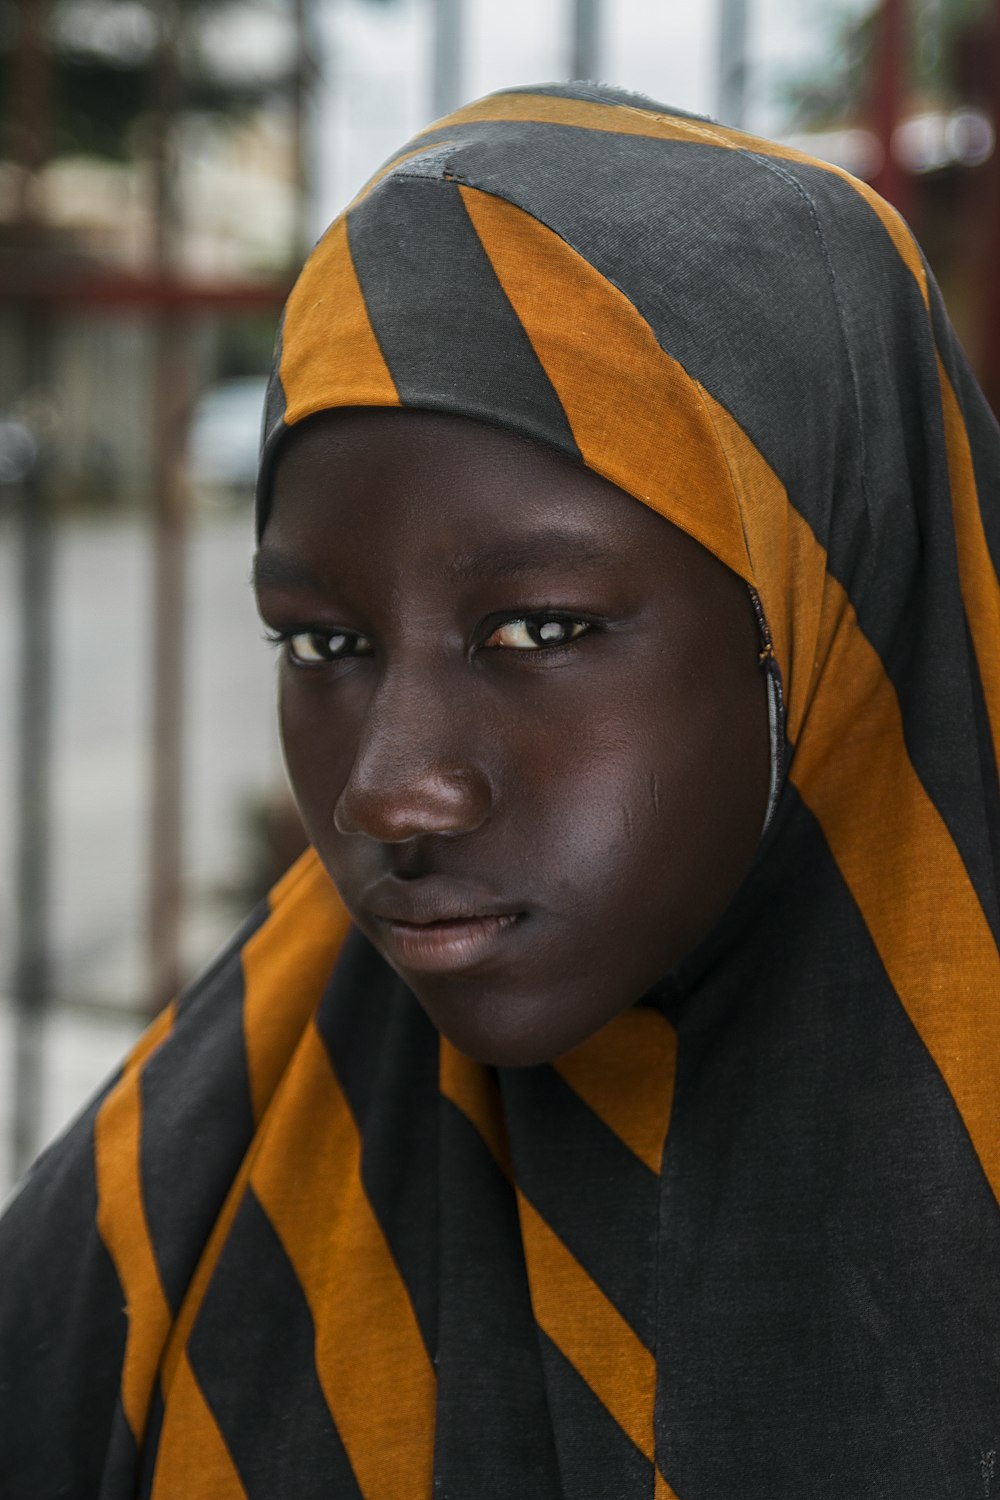 검은 색과 주황색 줄무늬 머리 스카프를 입은 소녀 선택적 초점 사진